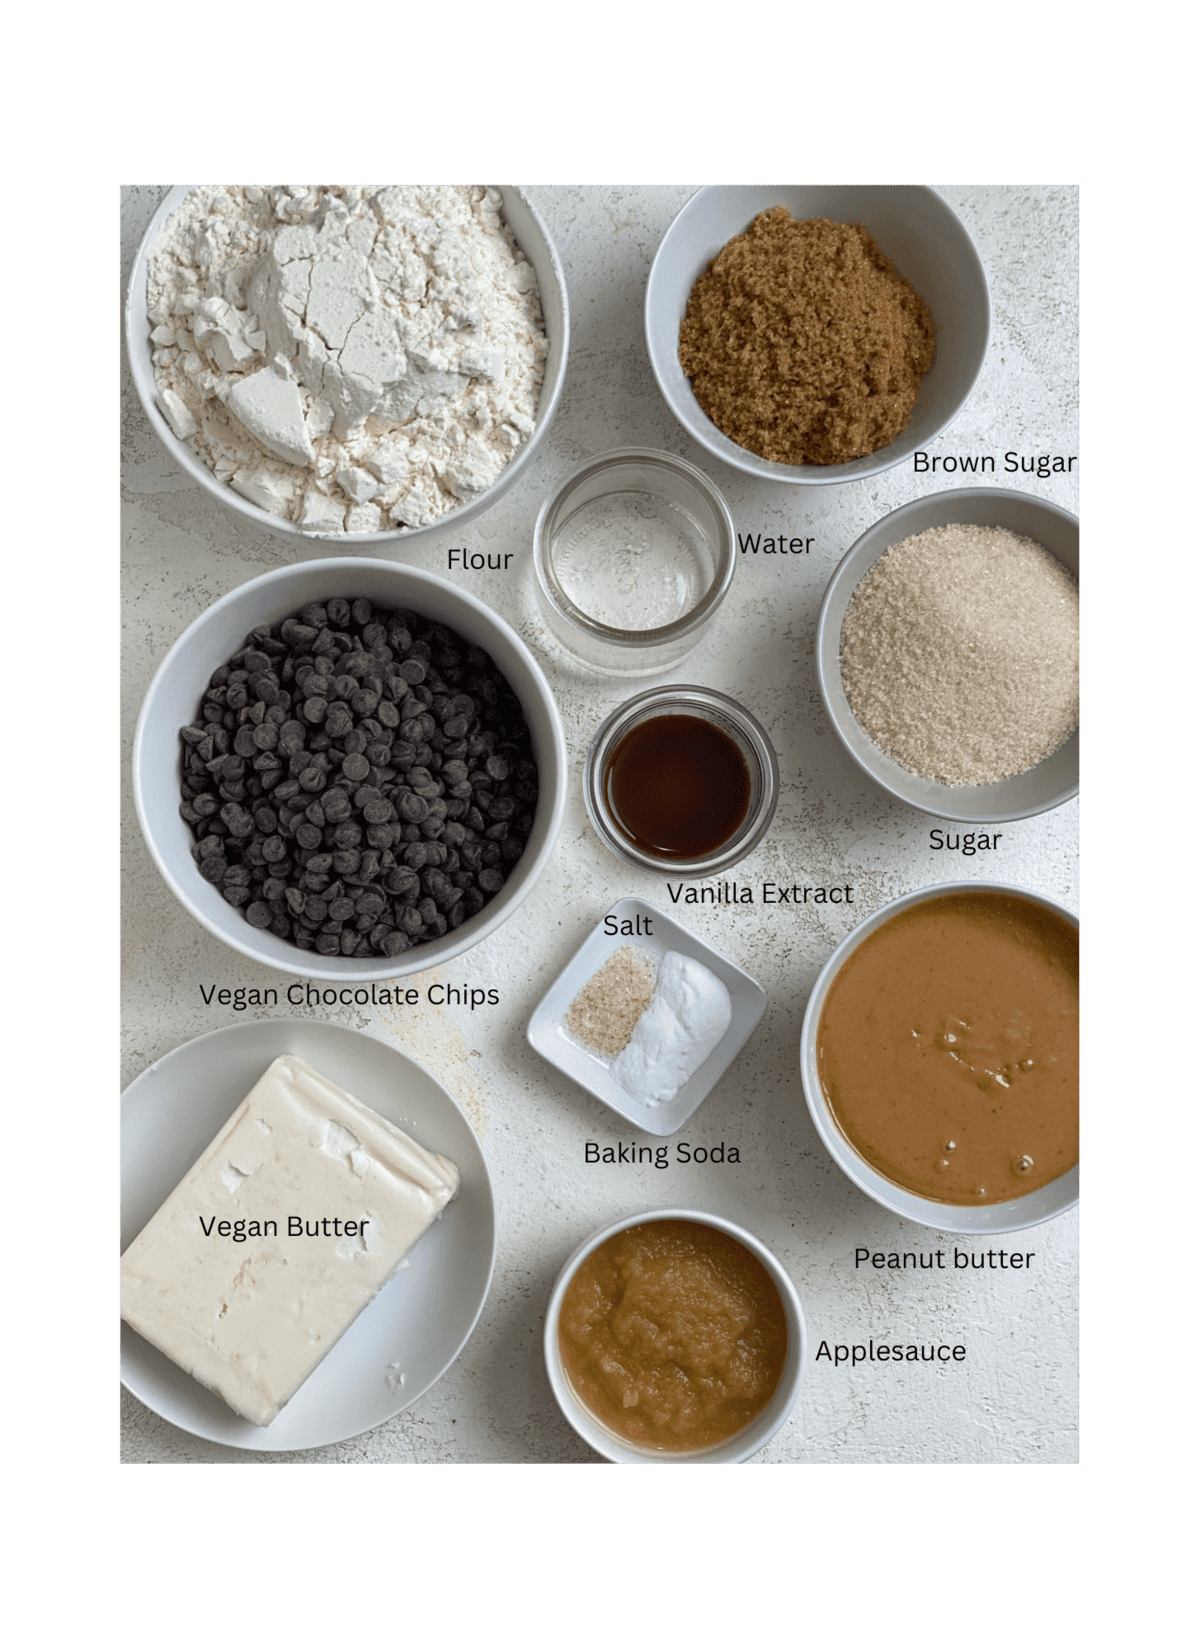 مواد تشکیل دهنده خمیر کوکی کره بادام زمینی خوراکی با یک سطح سفید اندازه گیری شده است